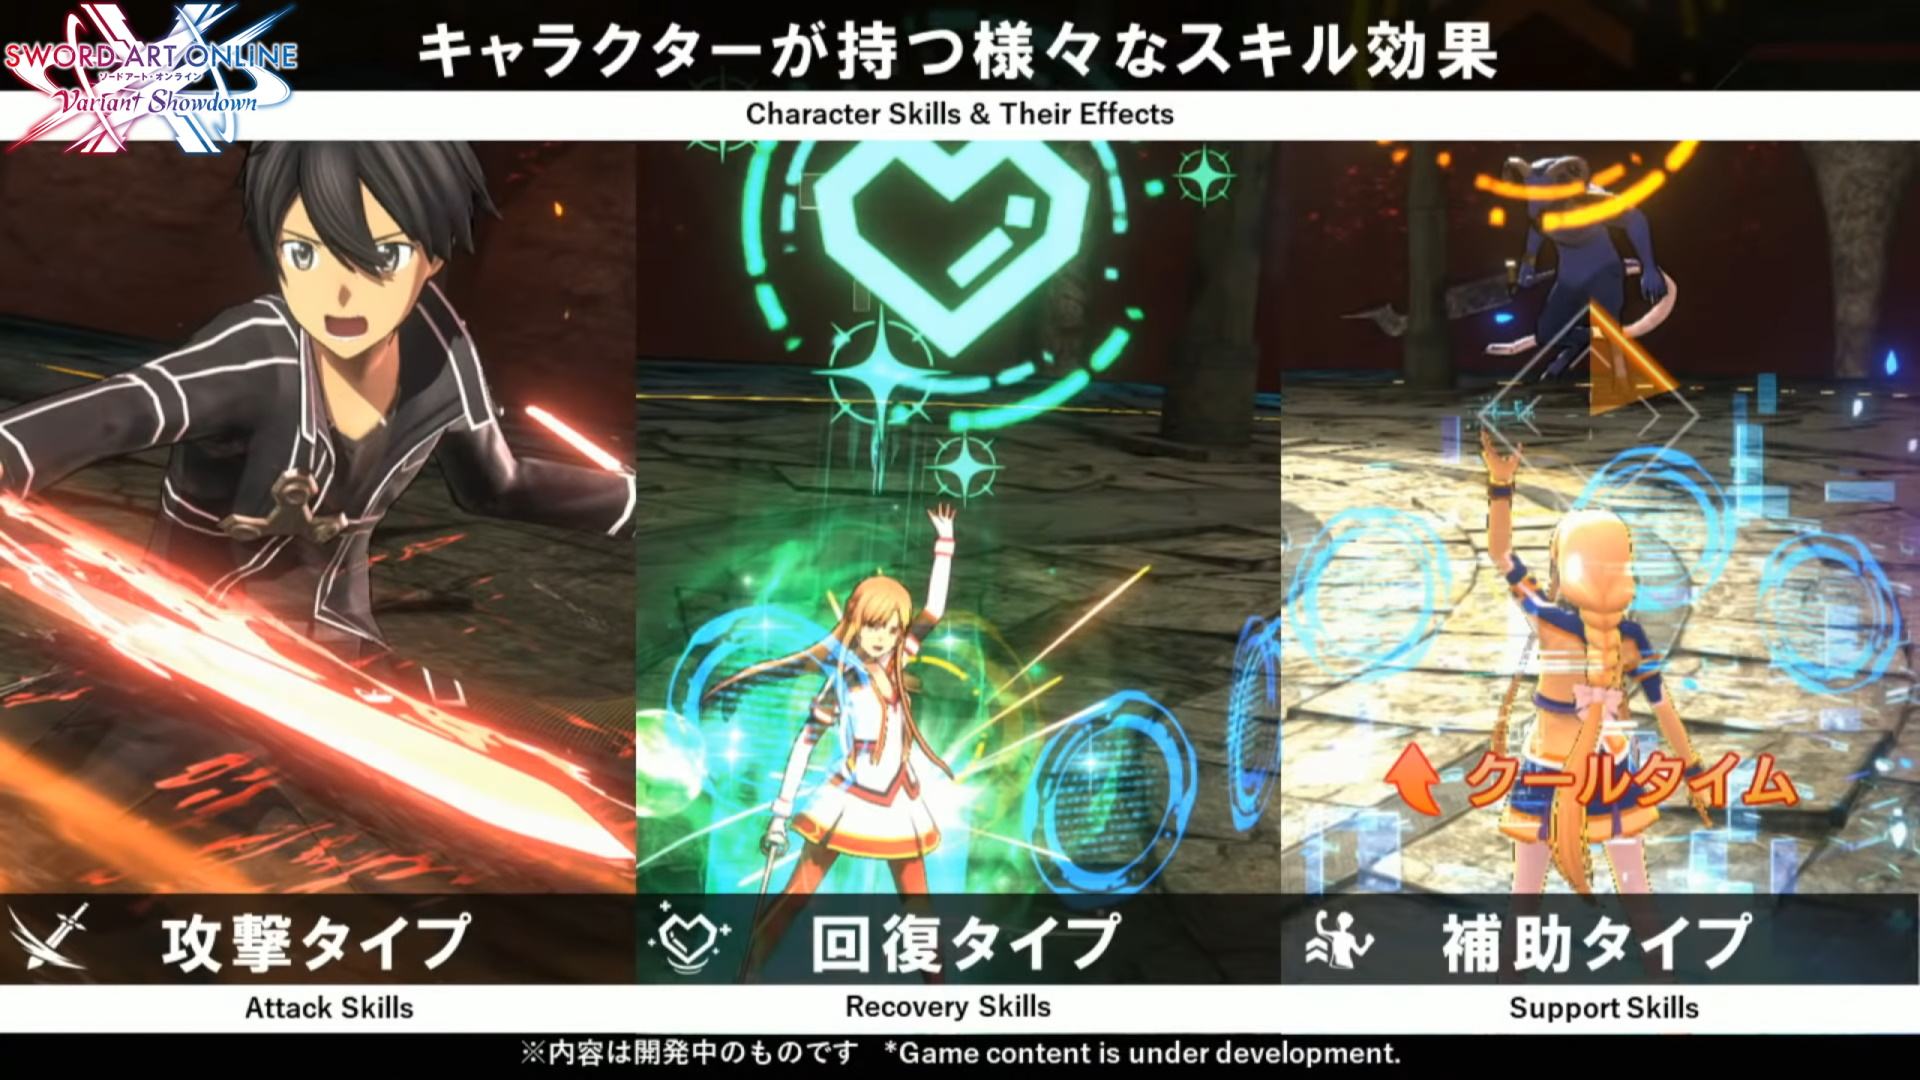 Sword Art Online Variant Showdown 3